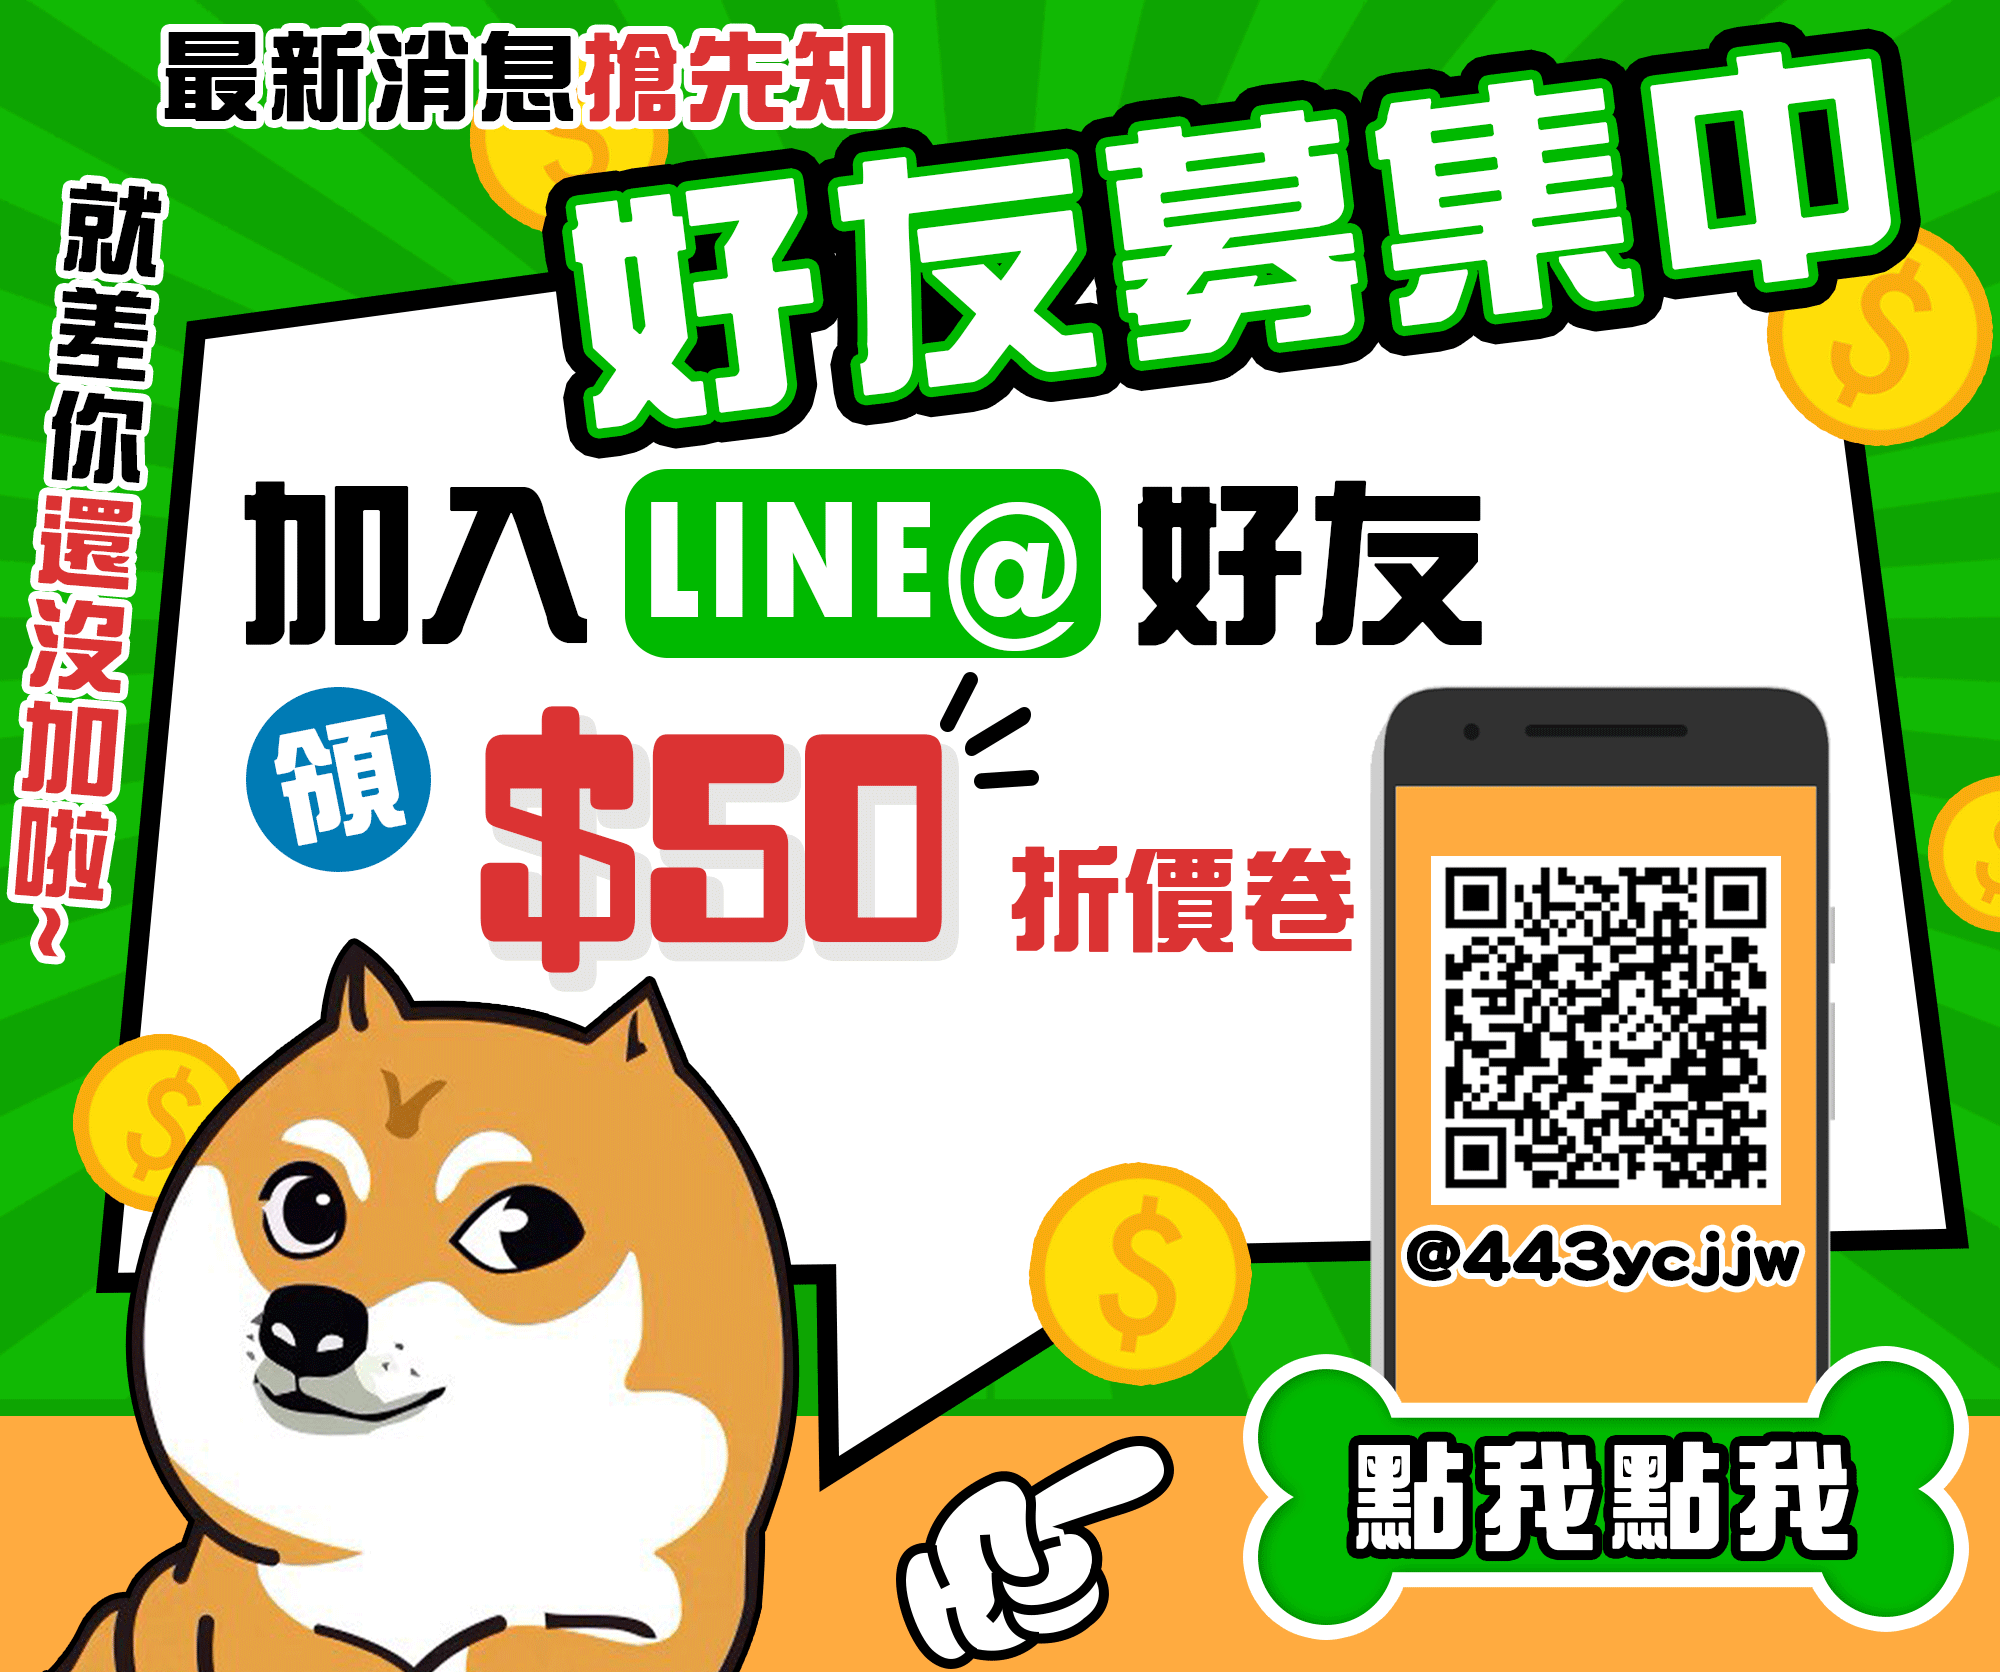 加入毛寶寶官方LINE@領100元折價卷，另外還可以搶先收到我們最新的消息與產品～趕快加入我們吧！